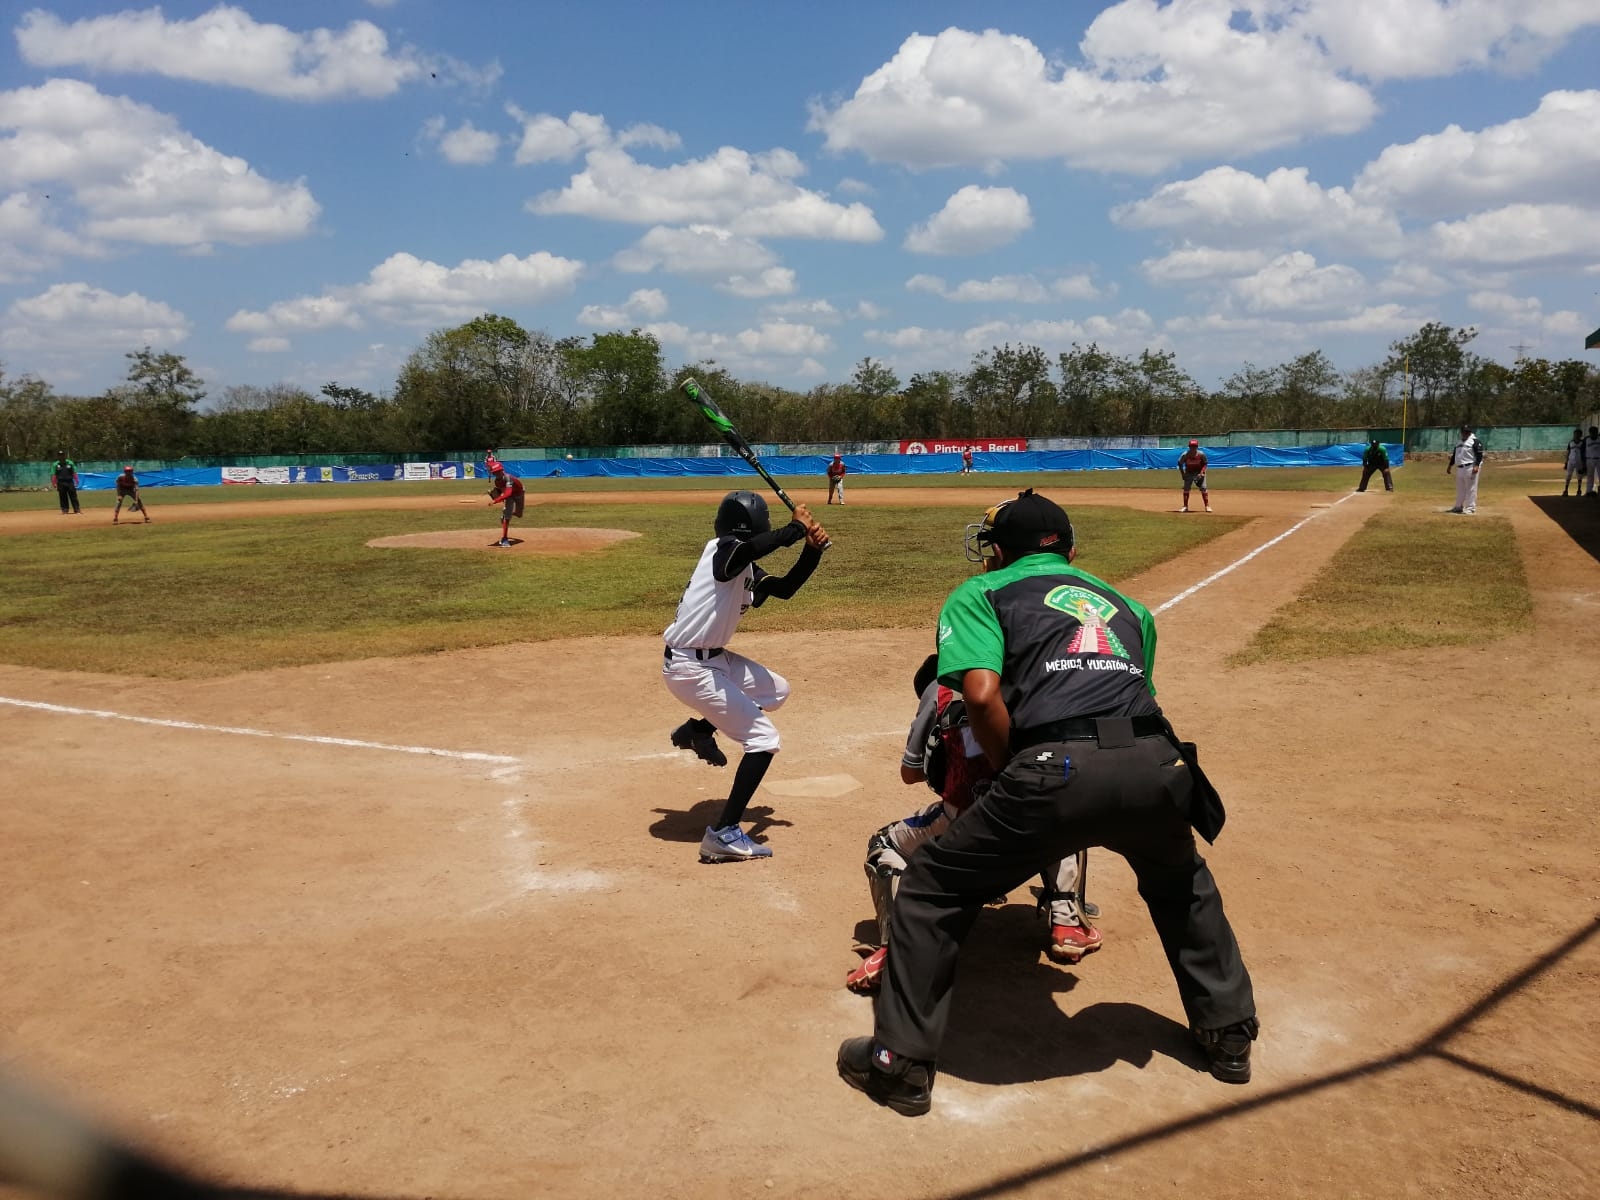 Inician las semifinales del Campeonato Nacional de la Liga Infantil y Juvenil Yucatán: EN VIVO